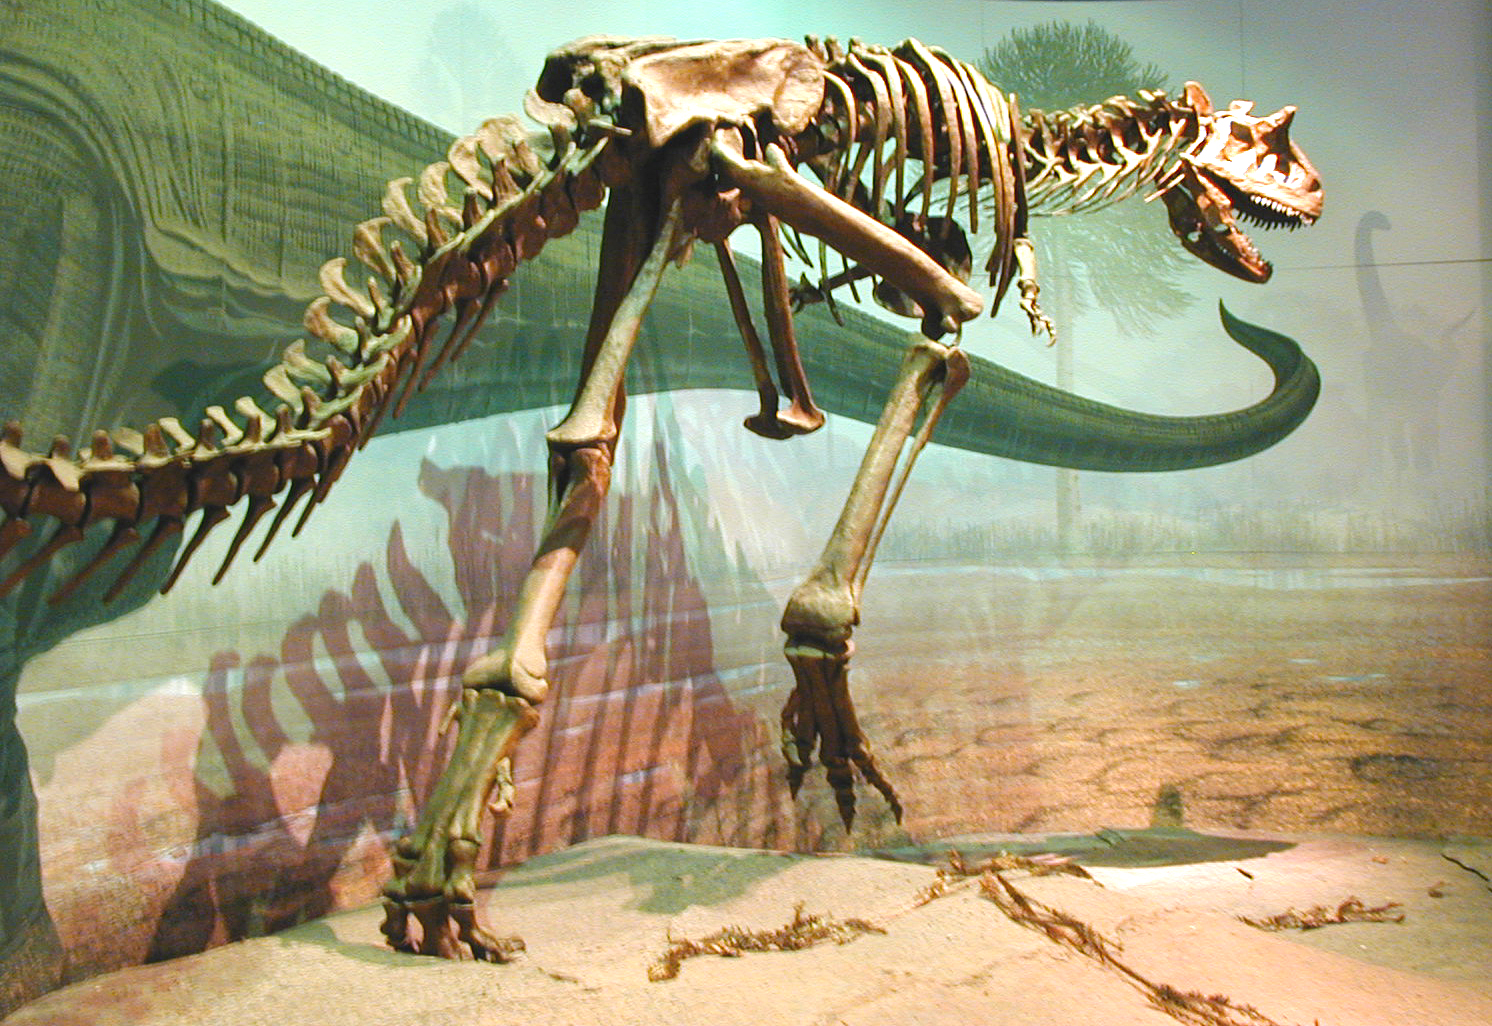 dinosaur bones ecard postcard dinosaur bones wallpaper dinosaur